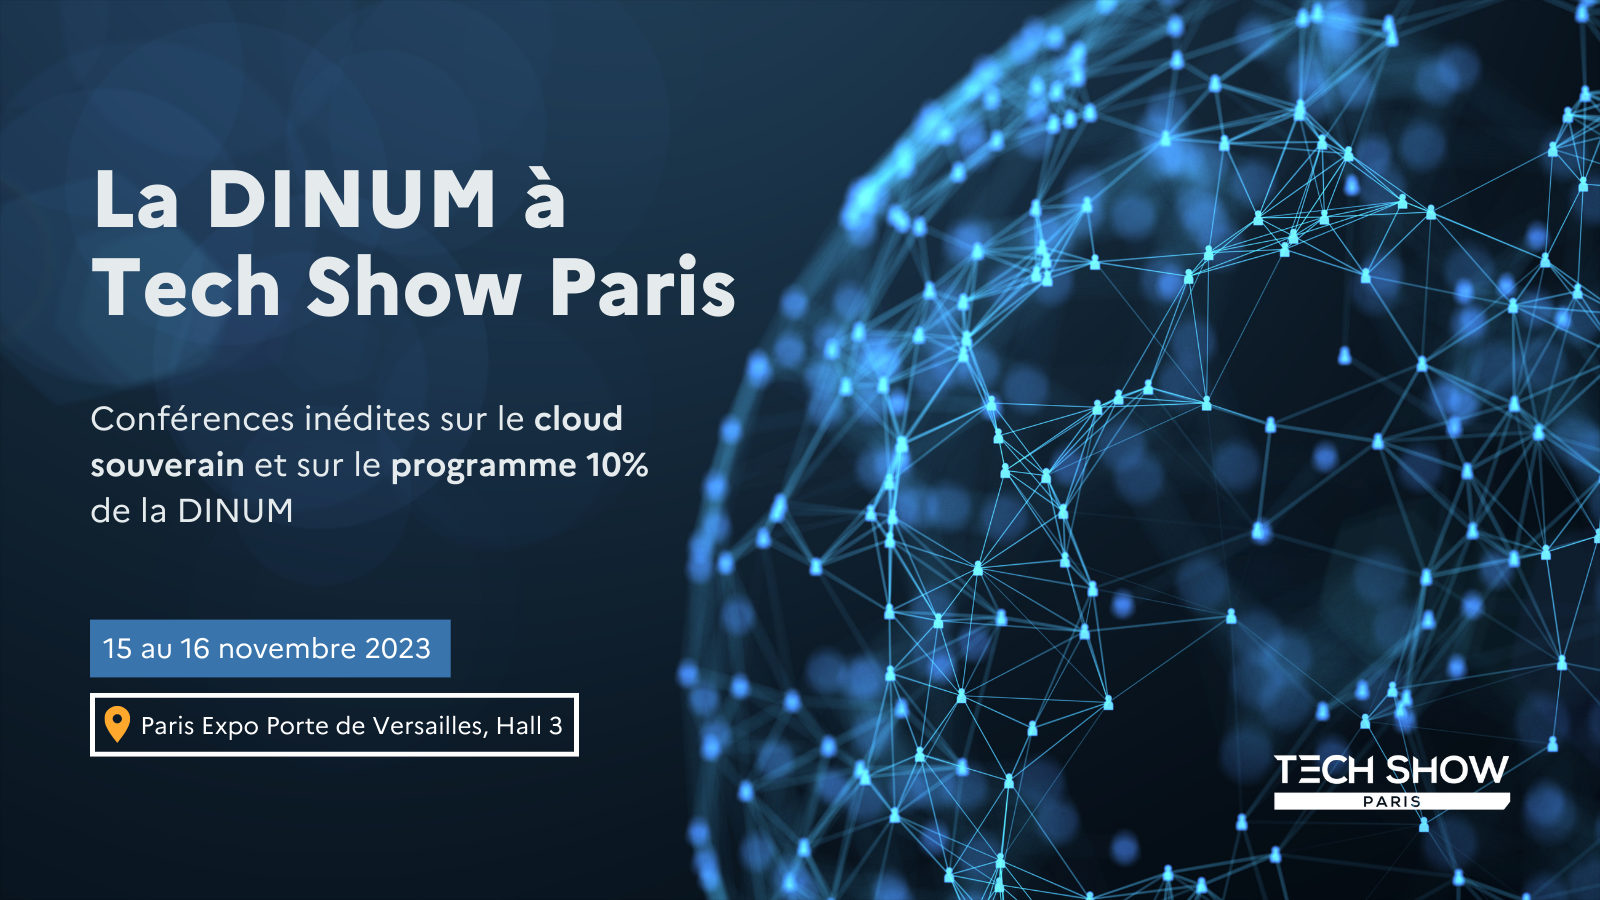 La DINUM à Tech Show Paris Conférences inédites sur le cloud souverain et sur le programme 10% de la DINUM 15 au 16 novembre 2023 Paris Expo Porte de Versailles, Hall 3